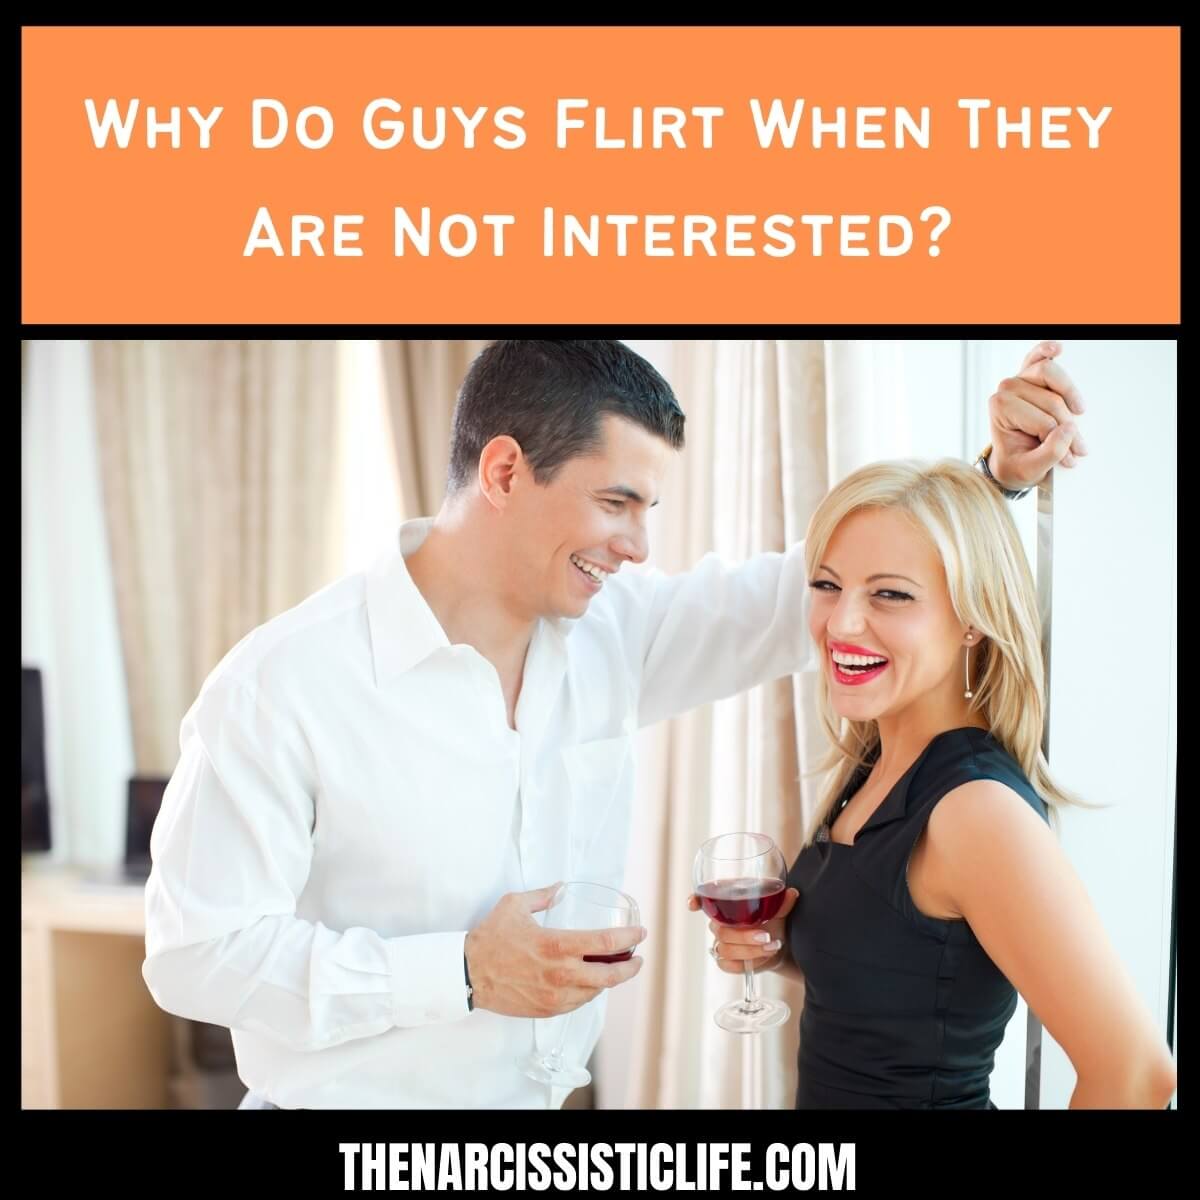 Kodėl vaikinai flirtuoja, kai jiems neįdomu? (Vyrai flirtuoja)